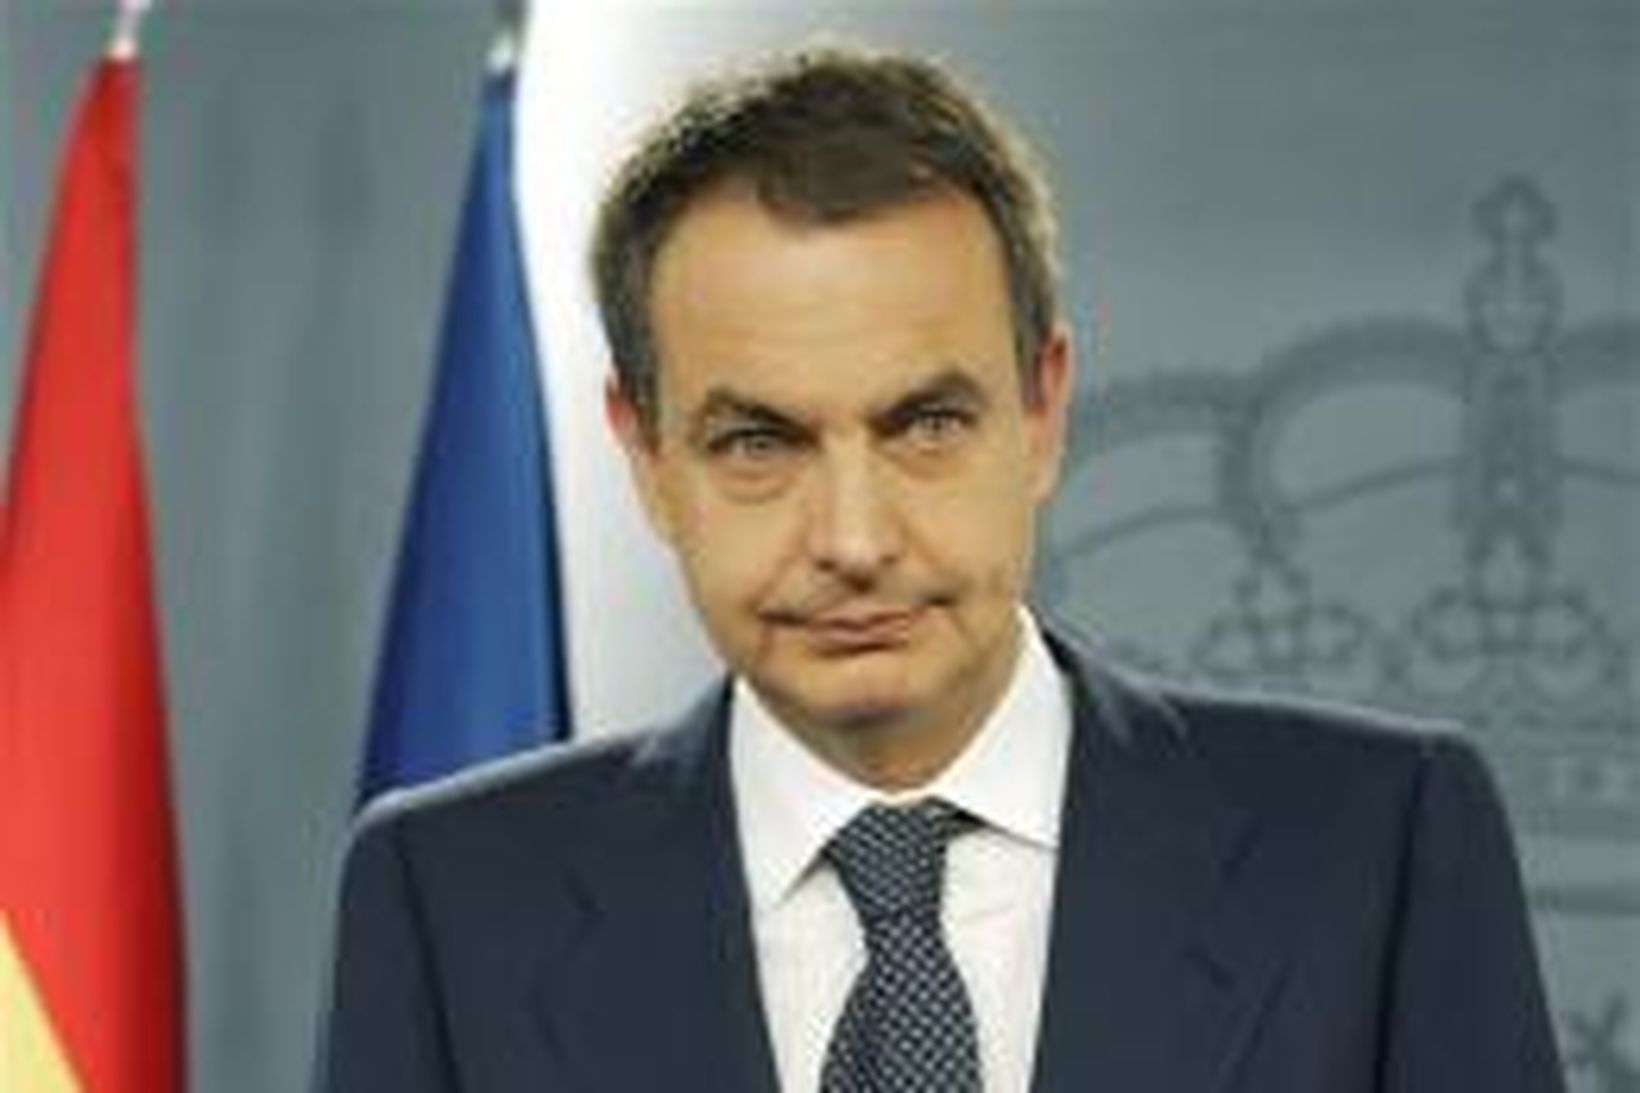 Jose Luis Rodriguez Zapatero, forsætisráðherra Spánar, hefur boðist til að …